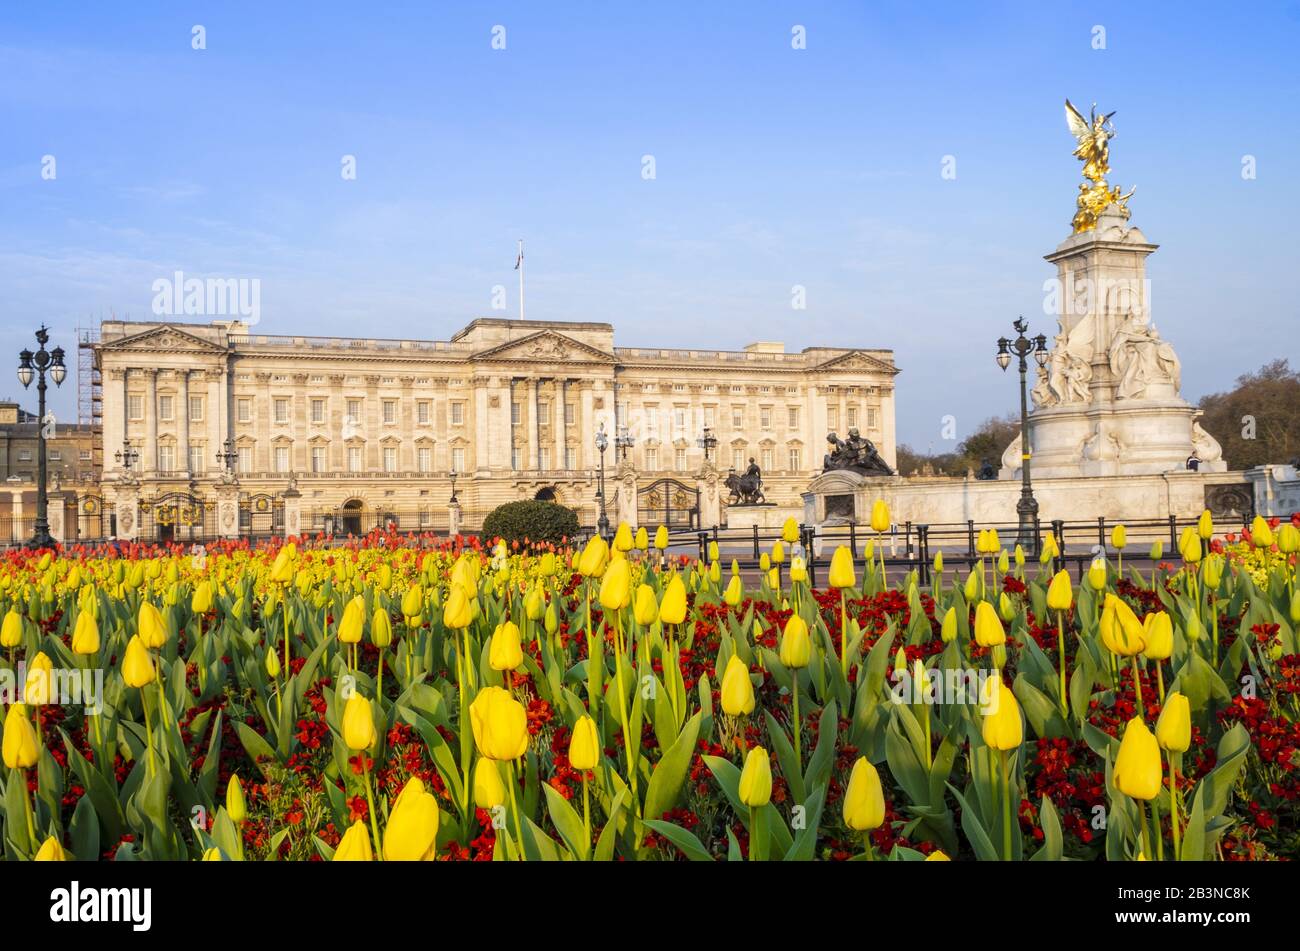 La facciata di Buckingham Palace, la residenza ufficiale della Regina a Londra, che mostra fiori primaverili, Londra, Inghilterra, Regno Unito, Europa Foto Stock